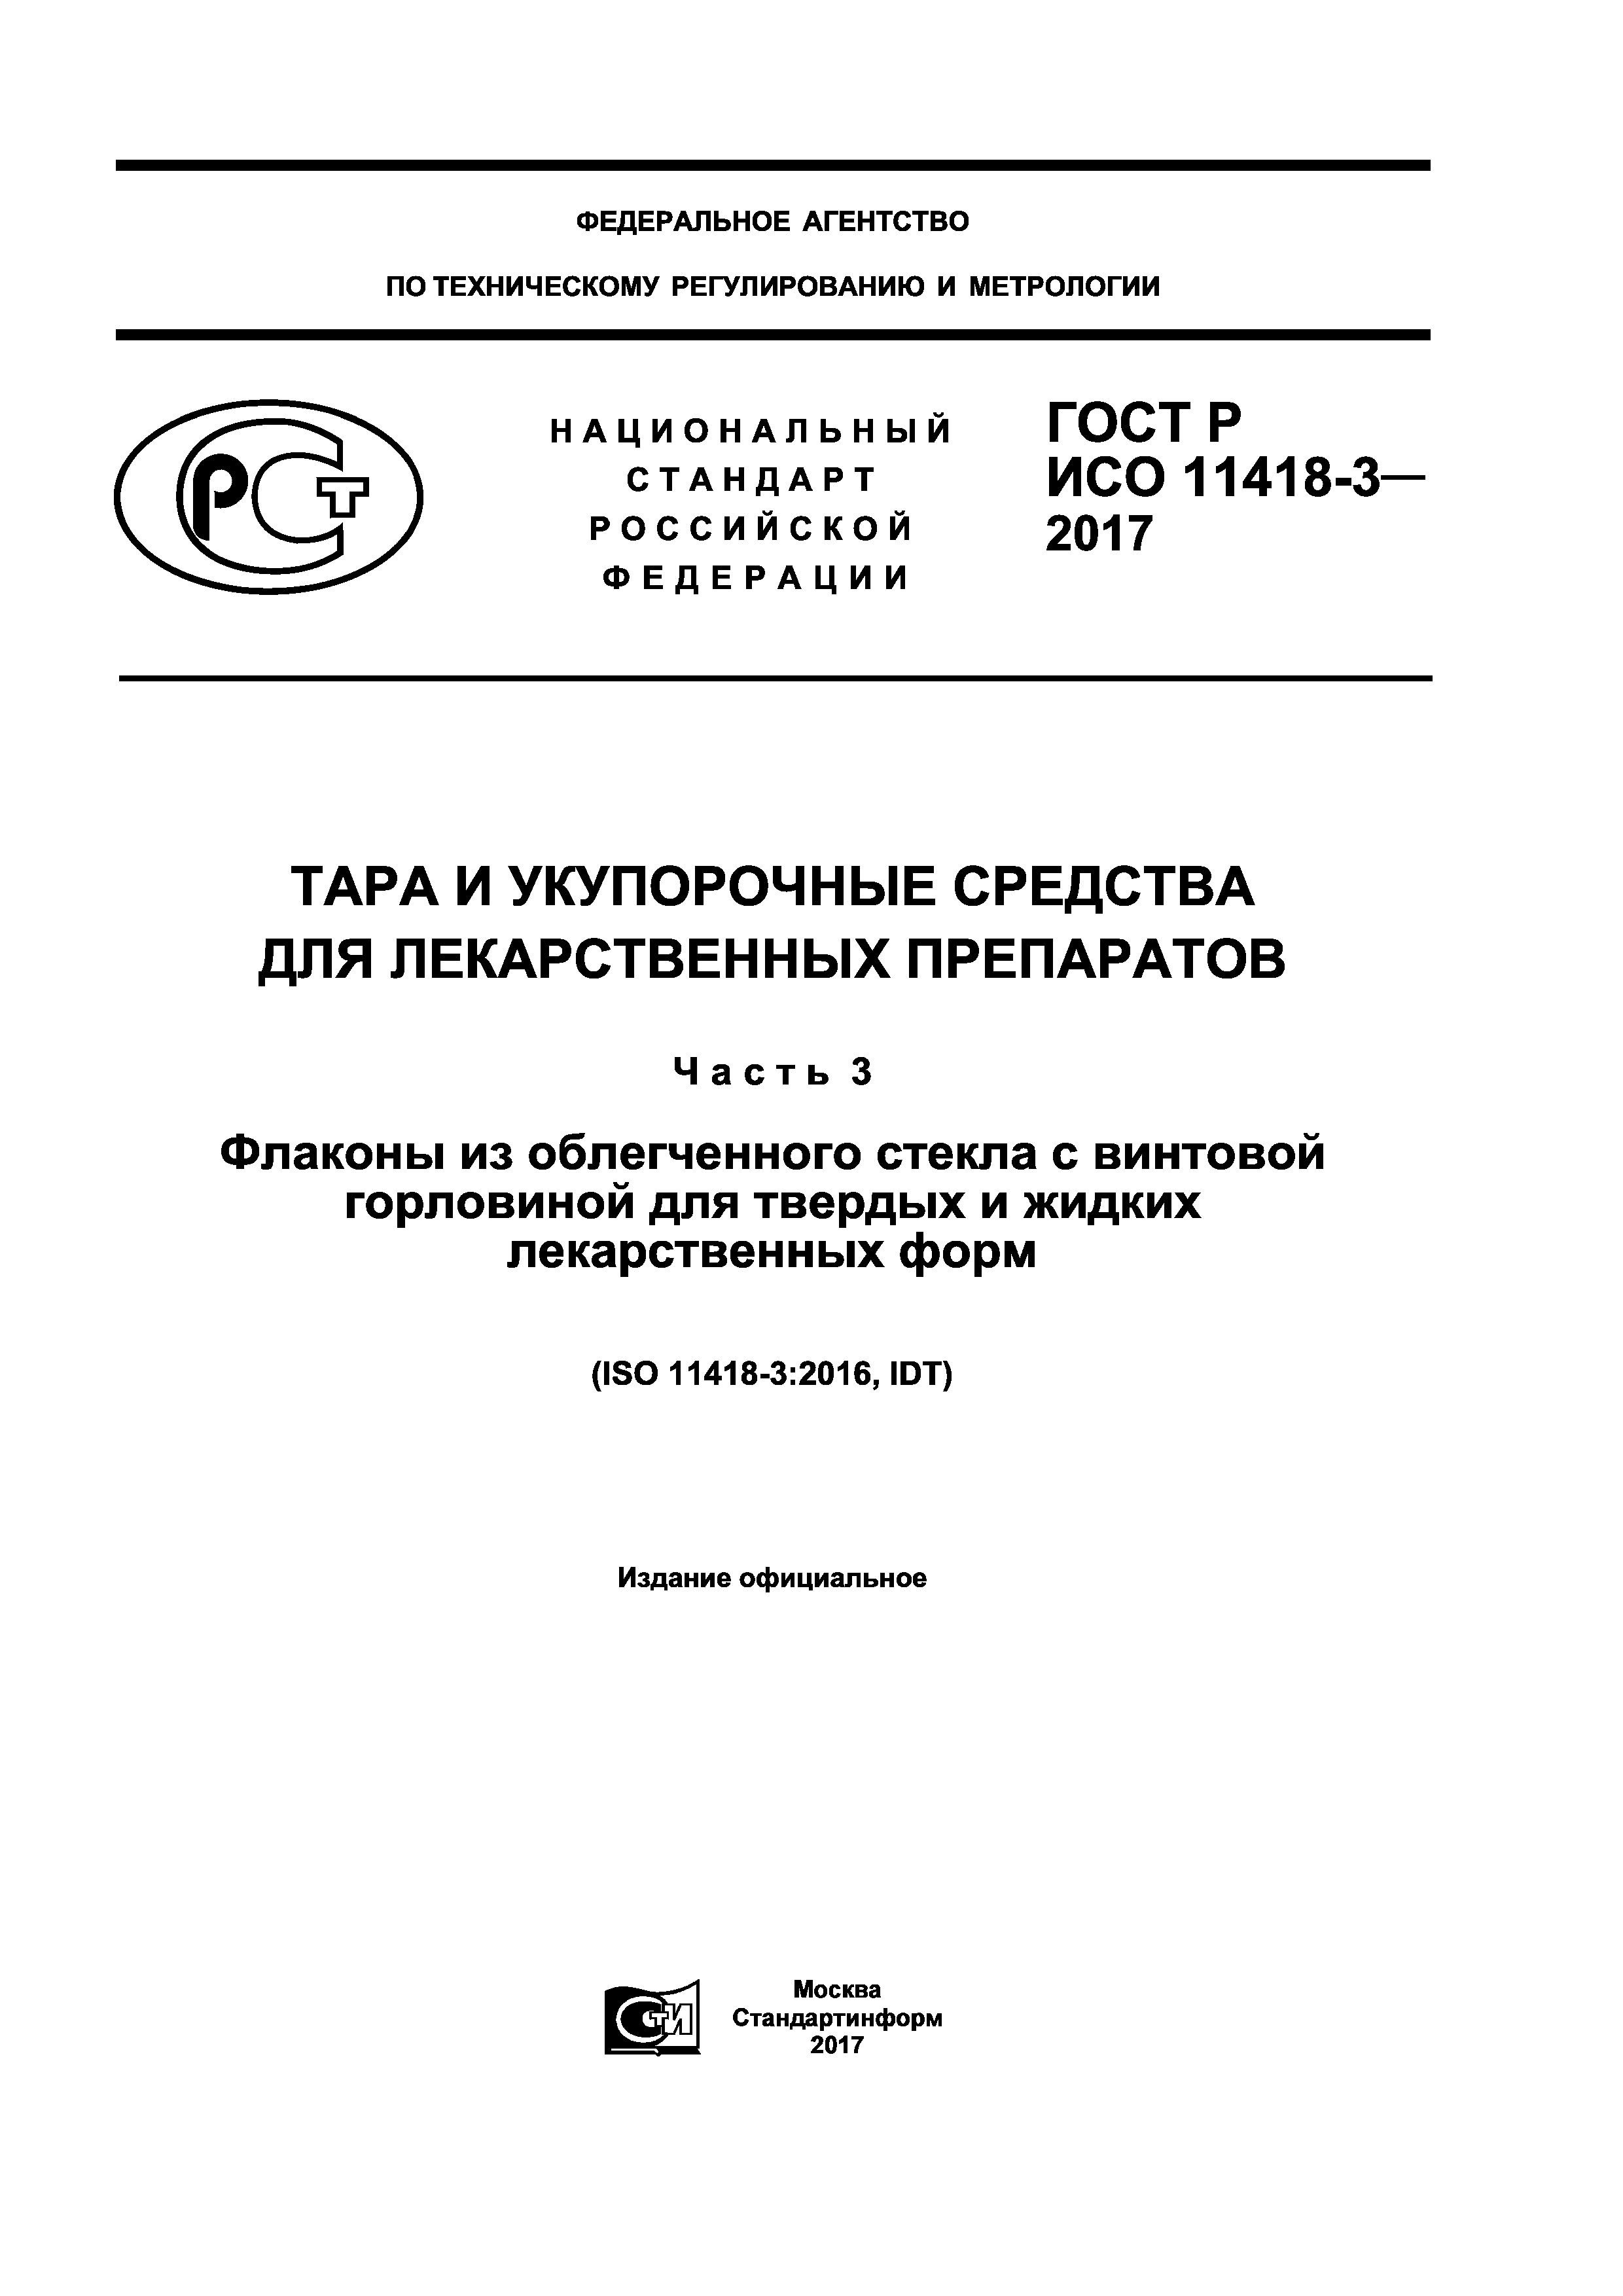 ГОСТ Р ИСО 11418-3-2017